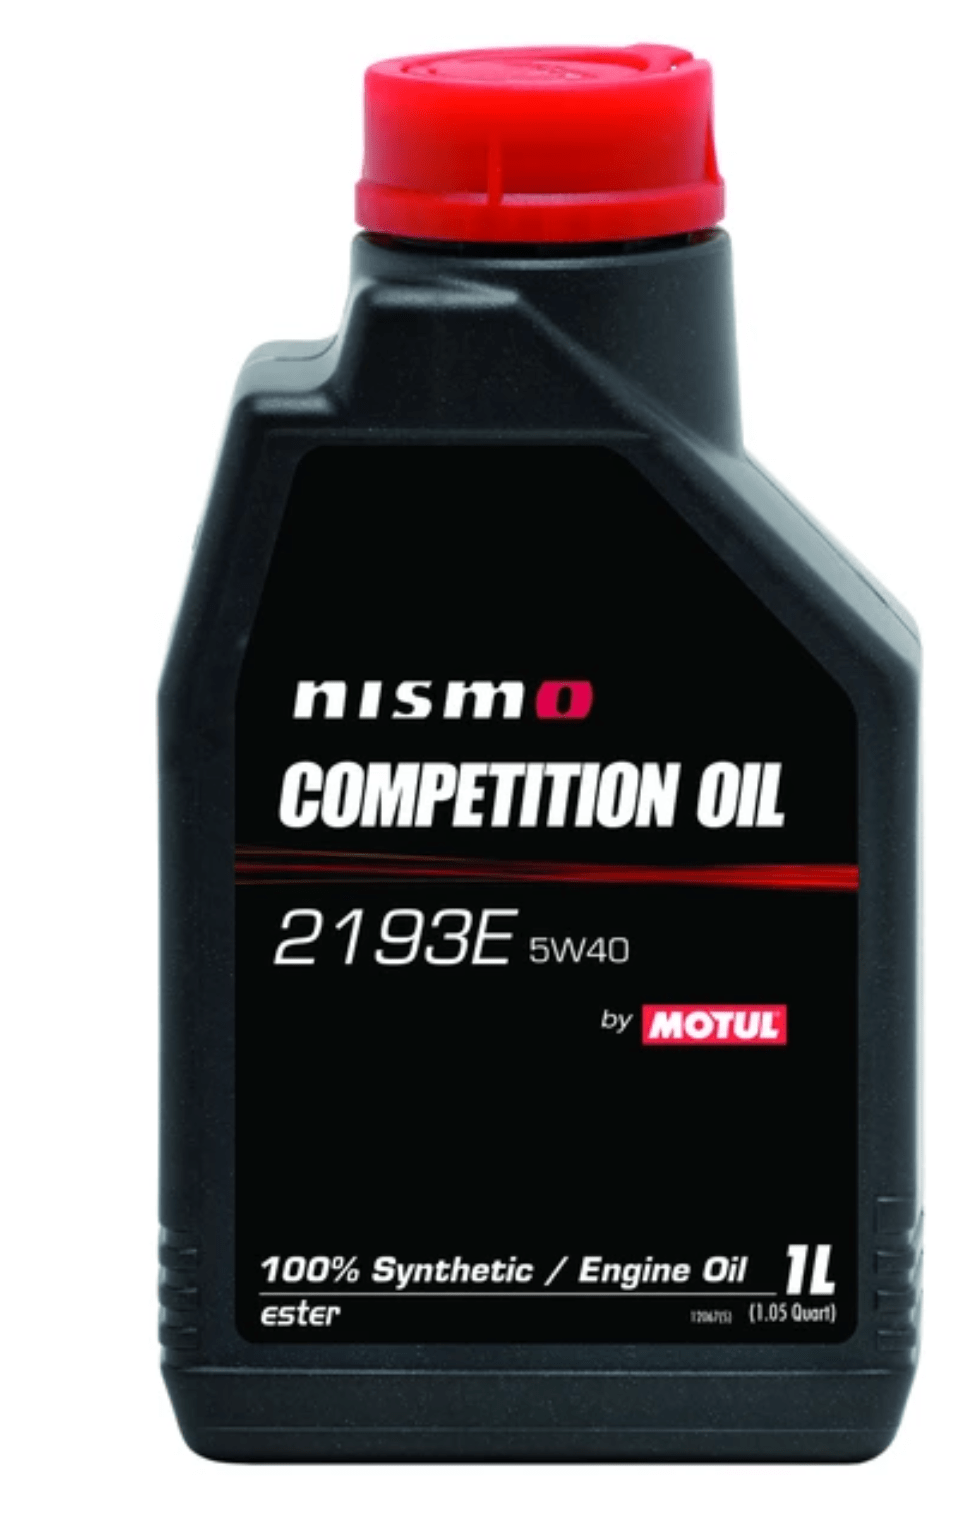 Motul-NISMO Competition Oil 2193E 5W40 1L